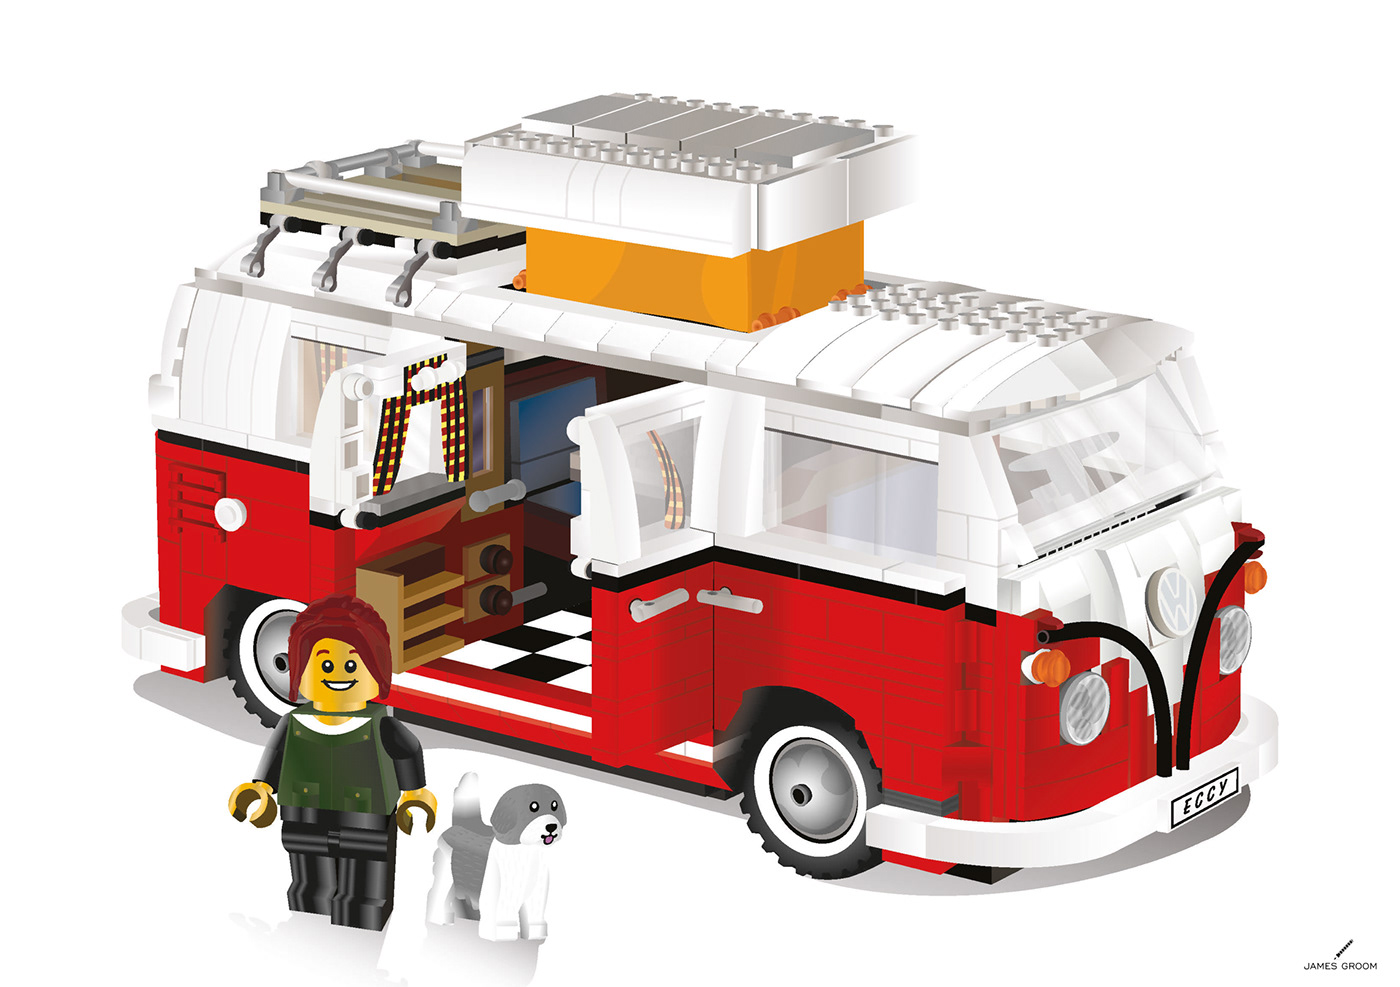 LEGO camper van